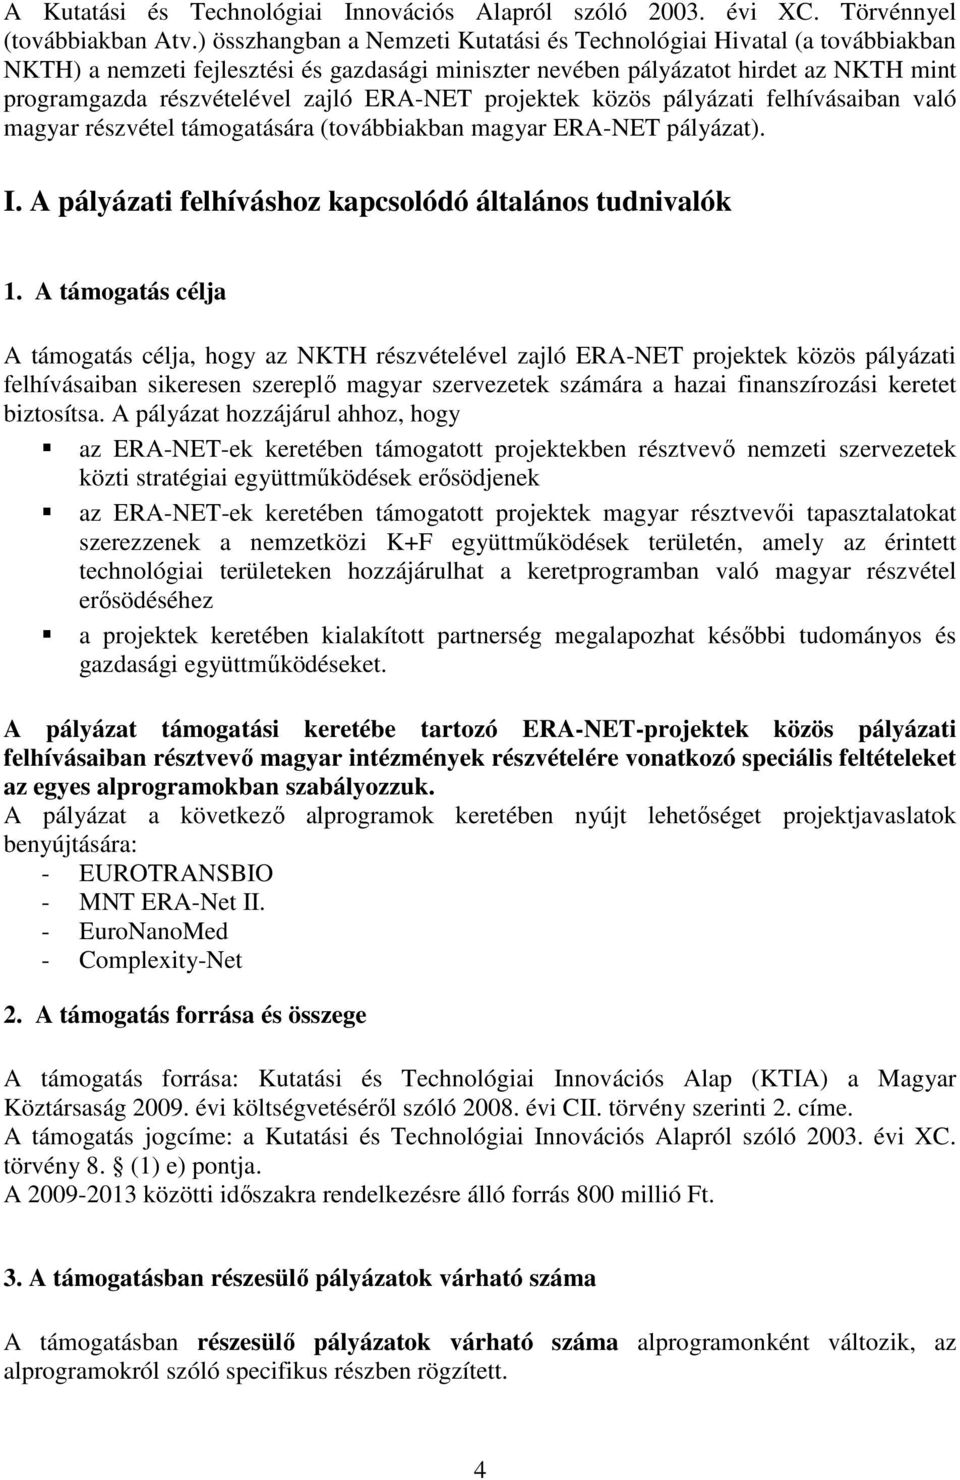 ERA-NET projektek közös pályázati felhívásaiban való magyar részvétel támogatására (továbbiakban magyar ERA-NET pályázat). I. A pályázati felhíváshoz kapcsolódó általános tudnivalók 1.